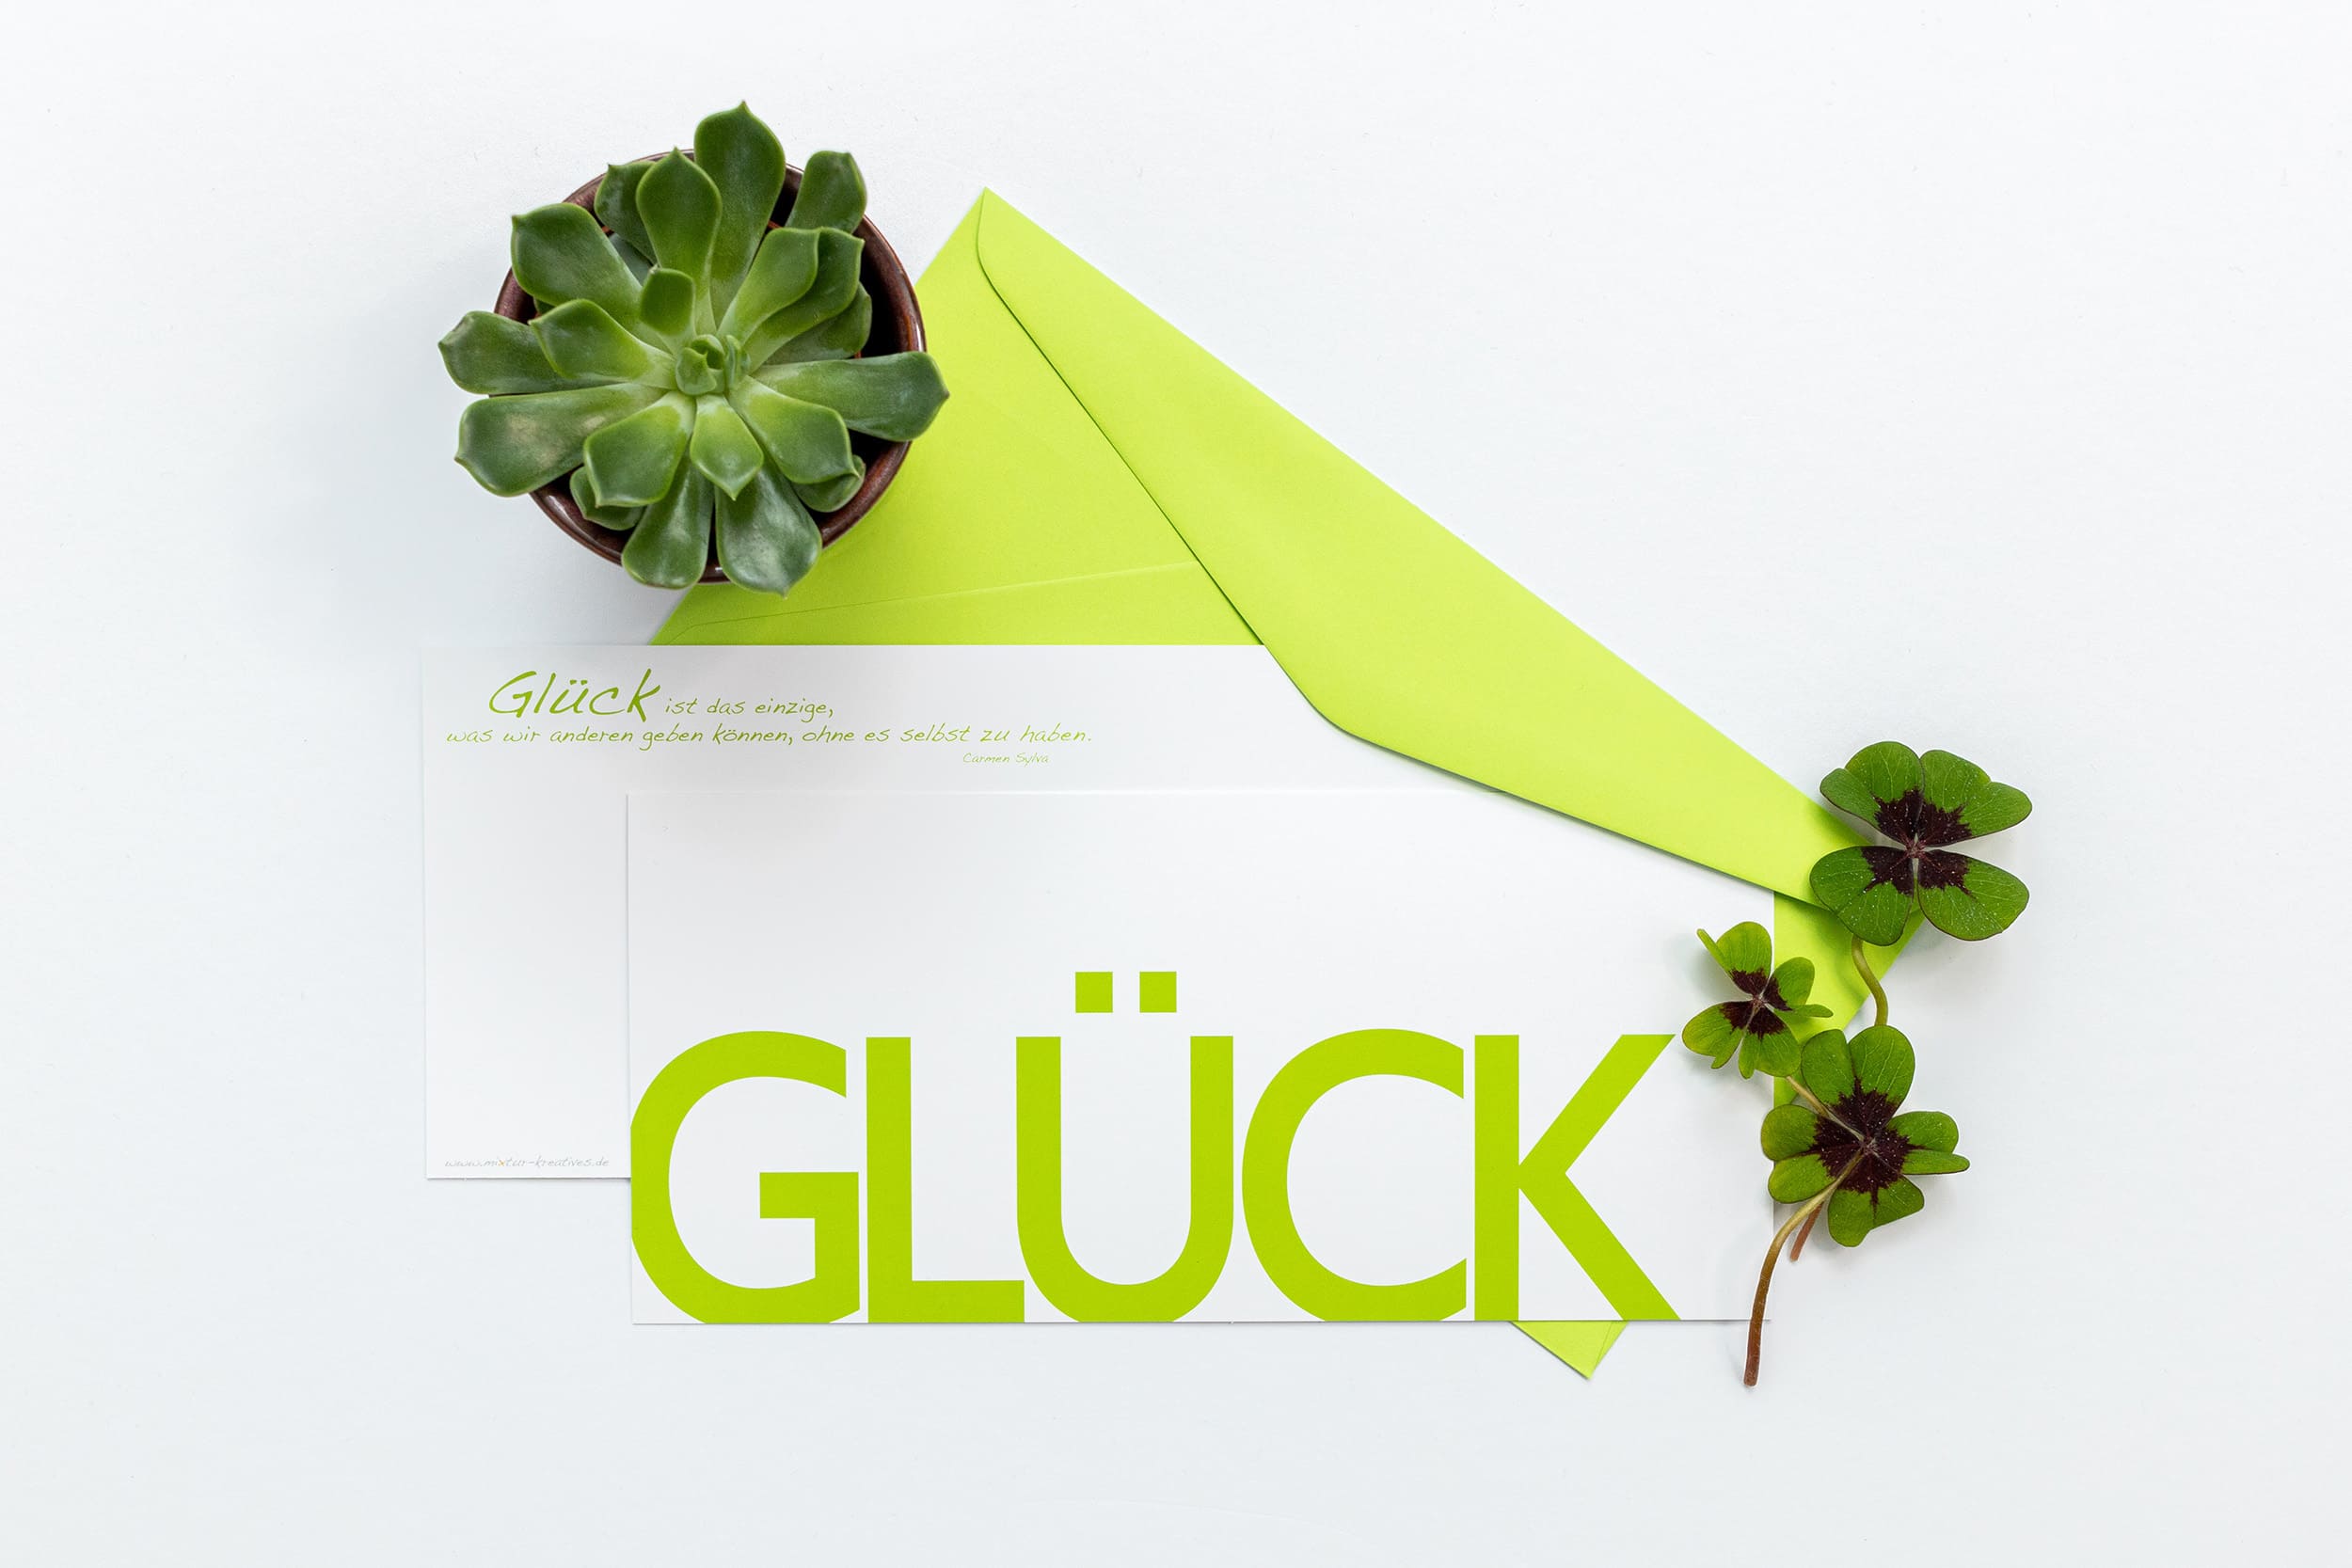 Grußkarte "GLÜCK" mit passenden Accessoires: Sukkulente und Glücksklee